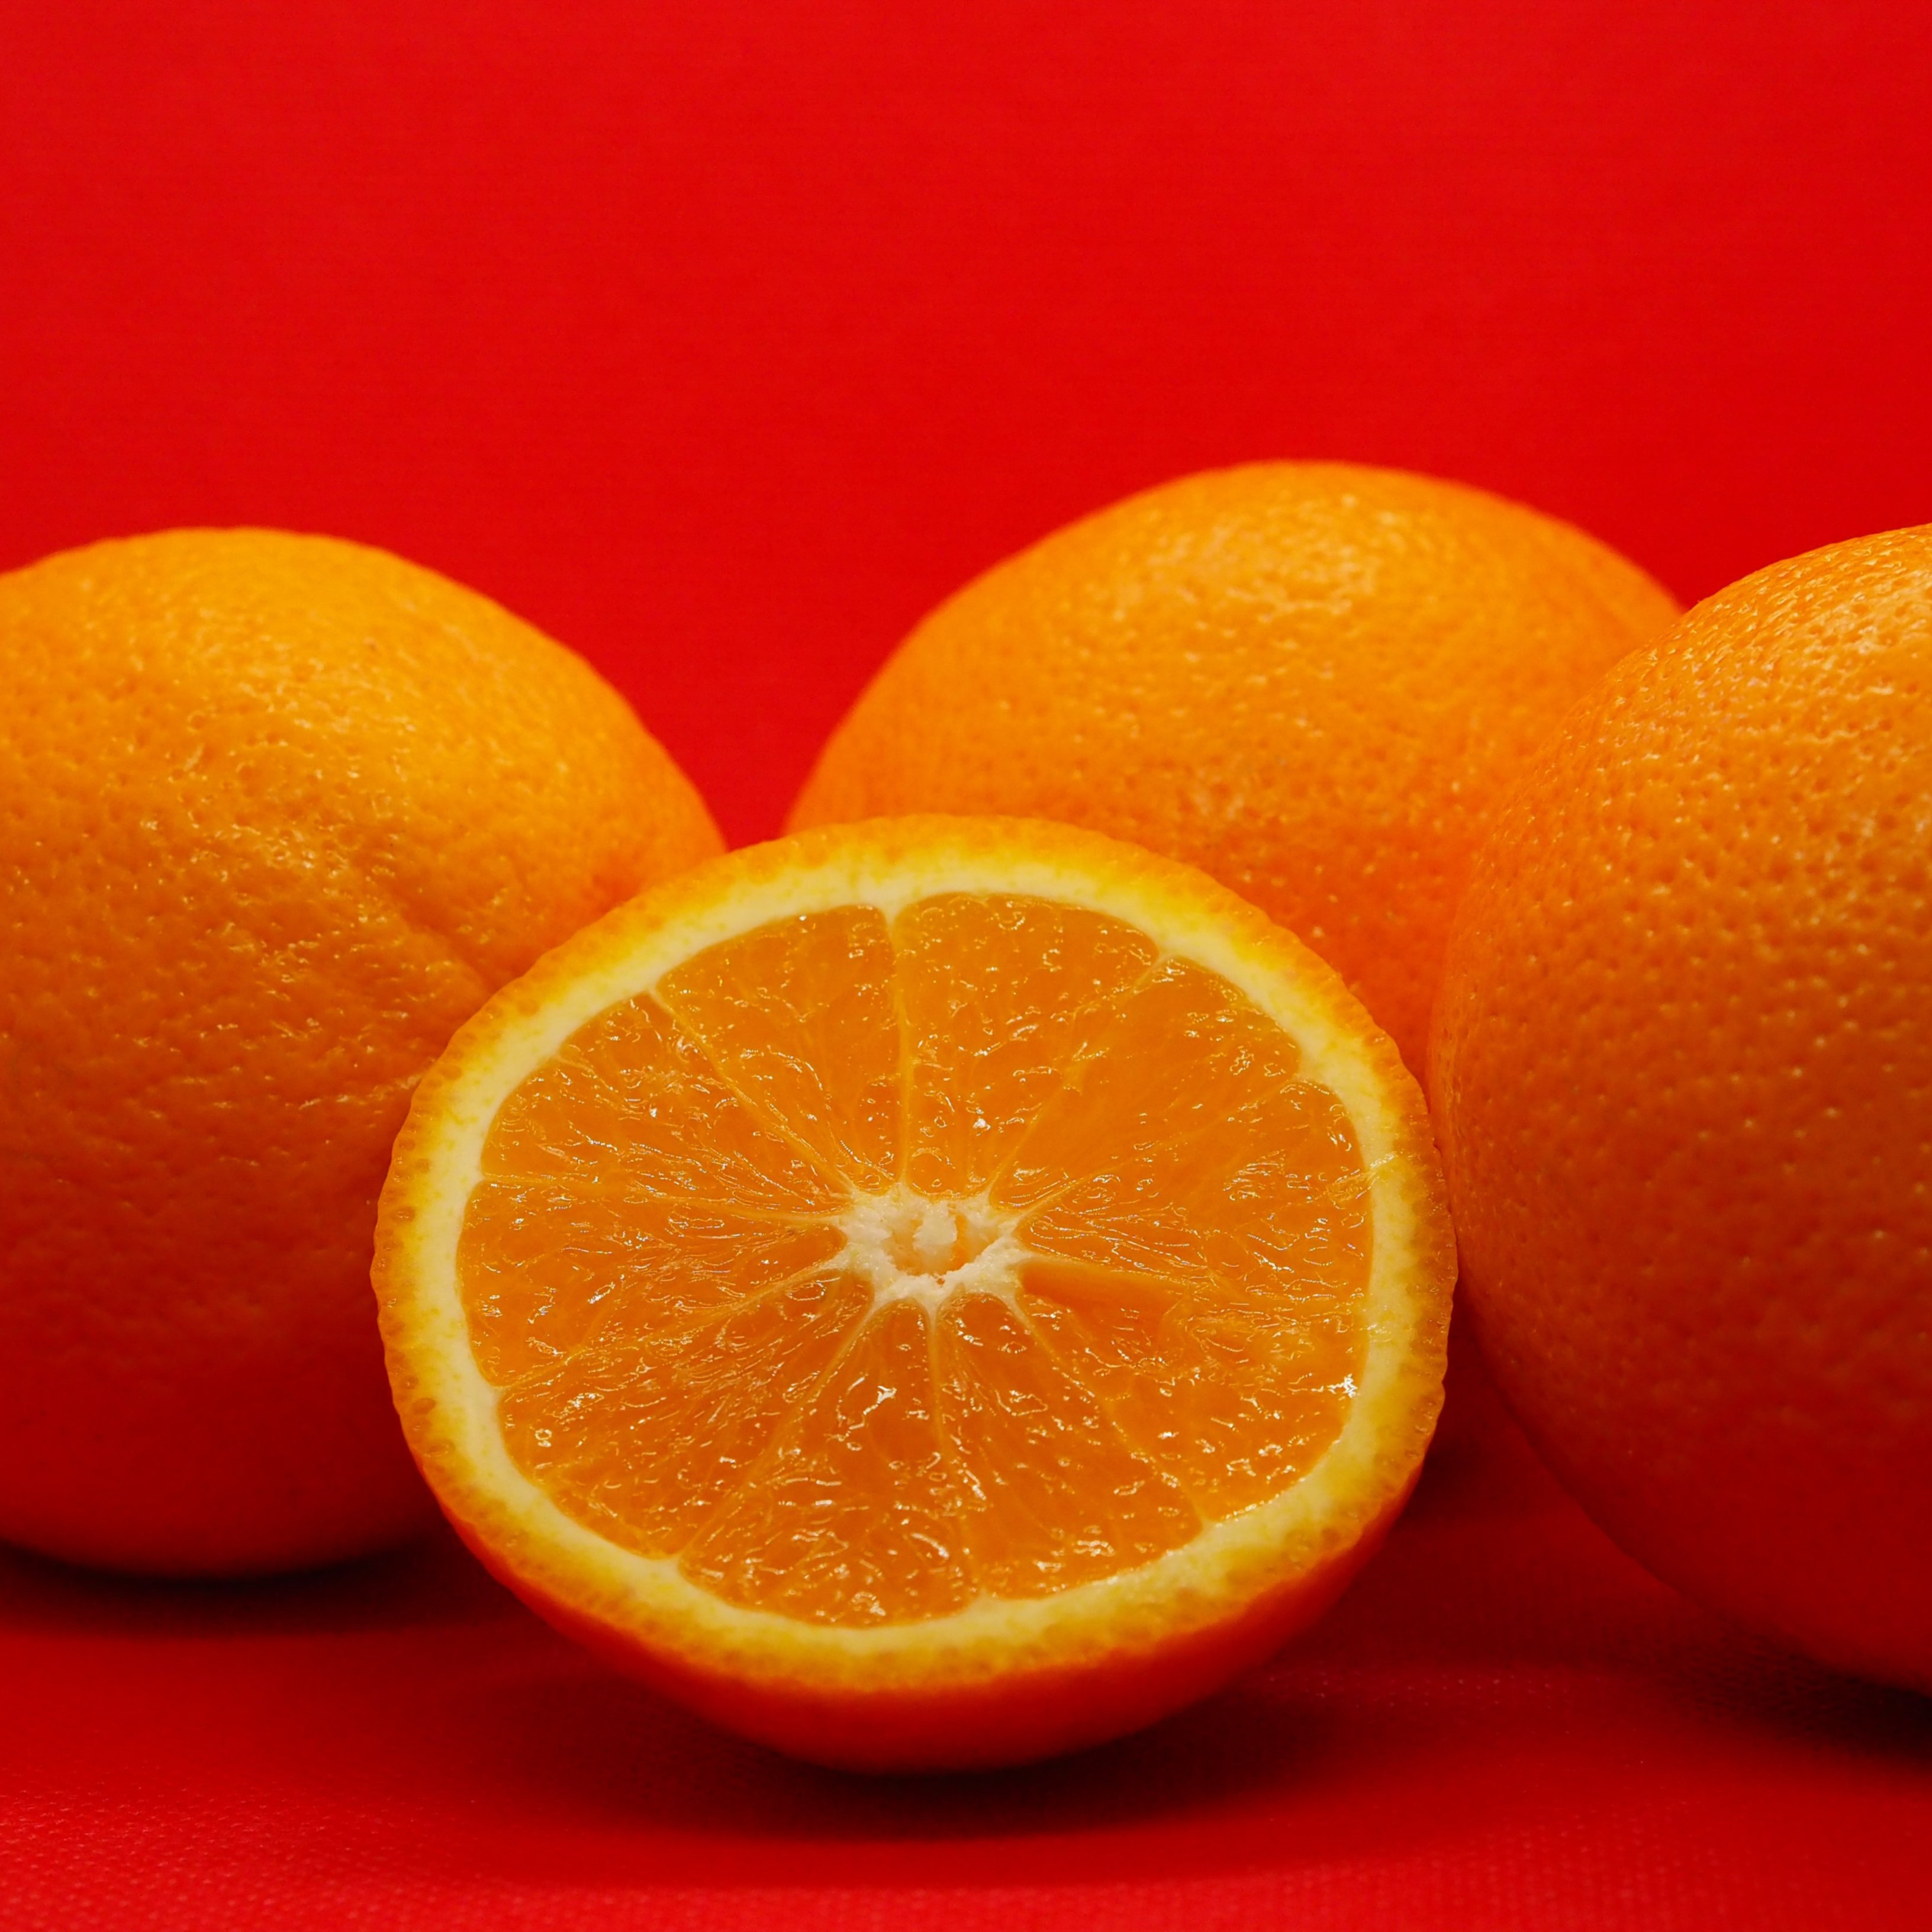 La naranja, buena para el peso, el corazón y el azúcar